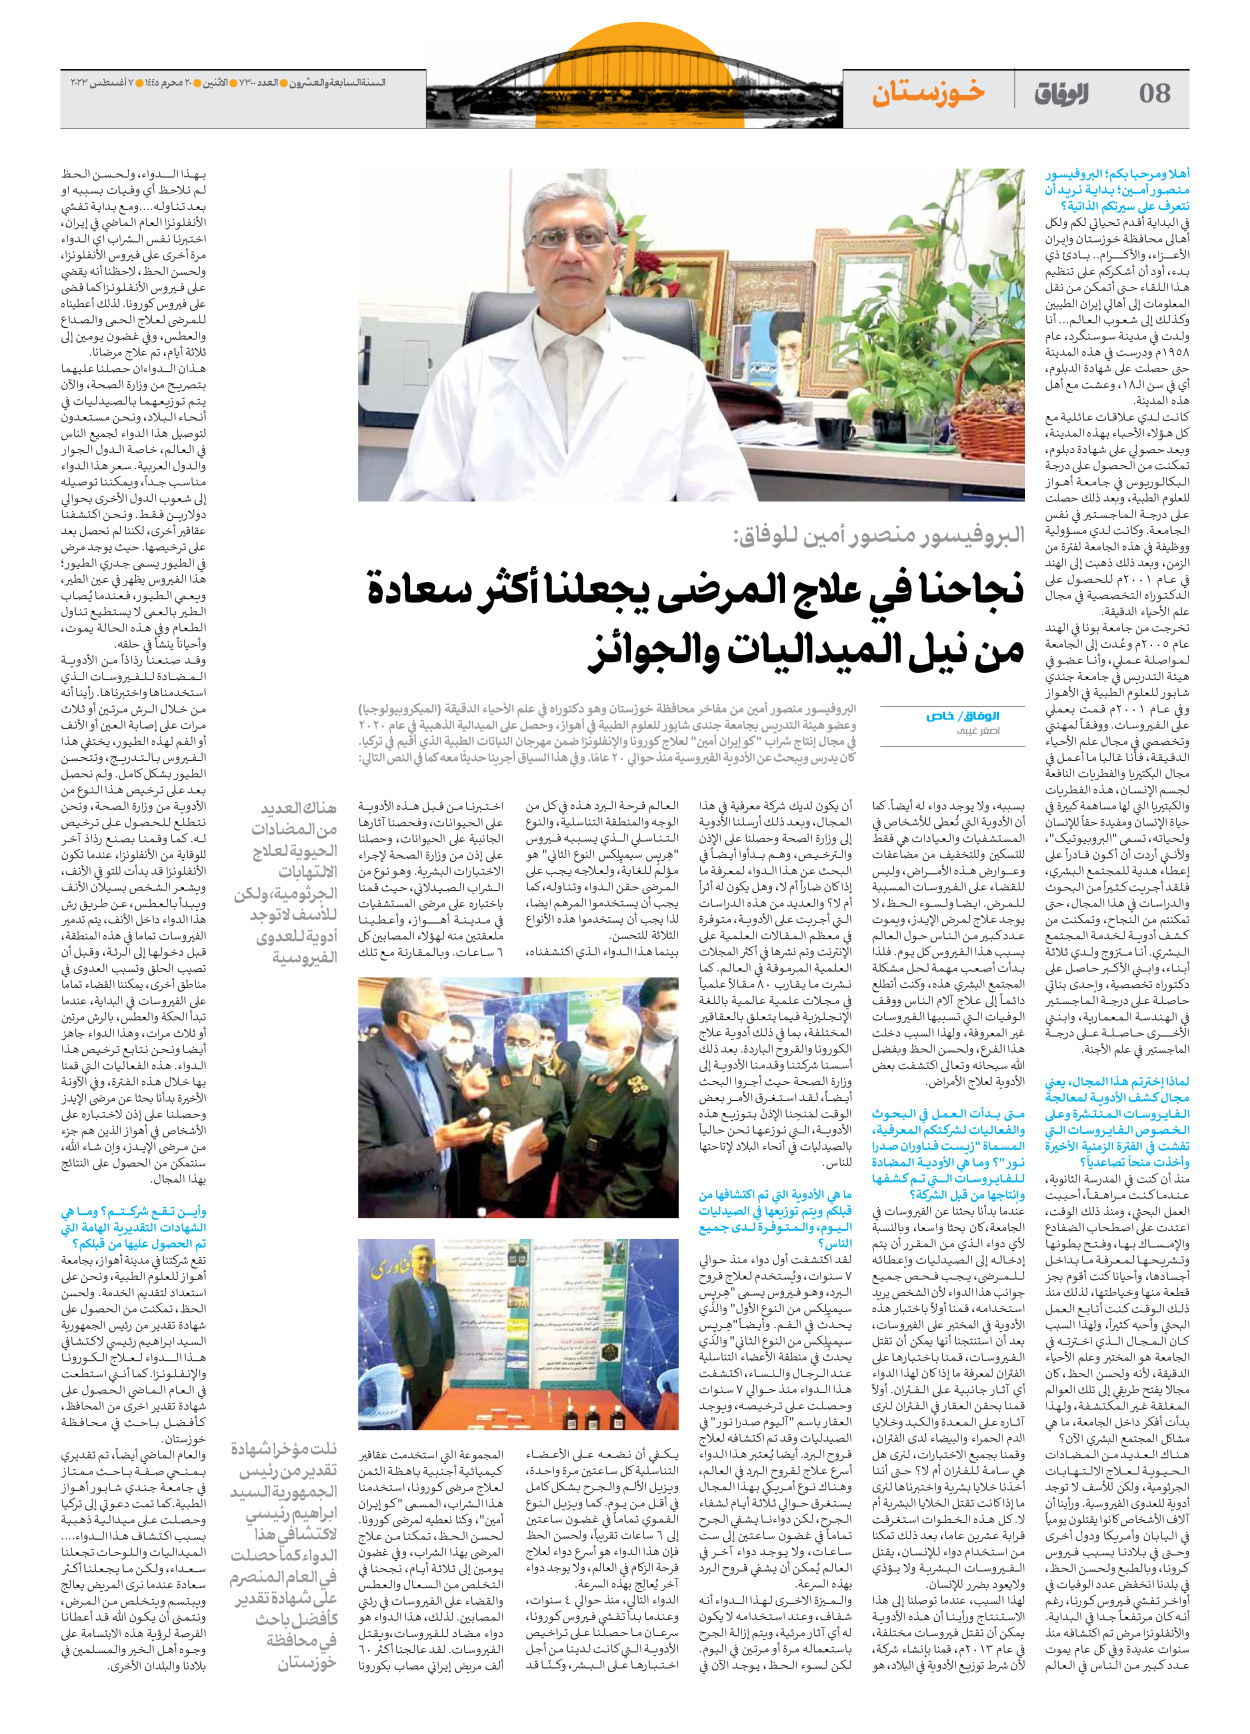 صحیفة ایران الدولیة الوفاق - العدد سبعة آلاف وثلاثمائة - ٠٧ أغسطس ٢٠٢٣ - الصفحة ۸